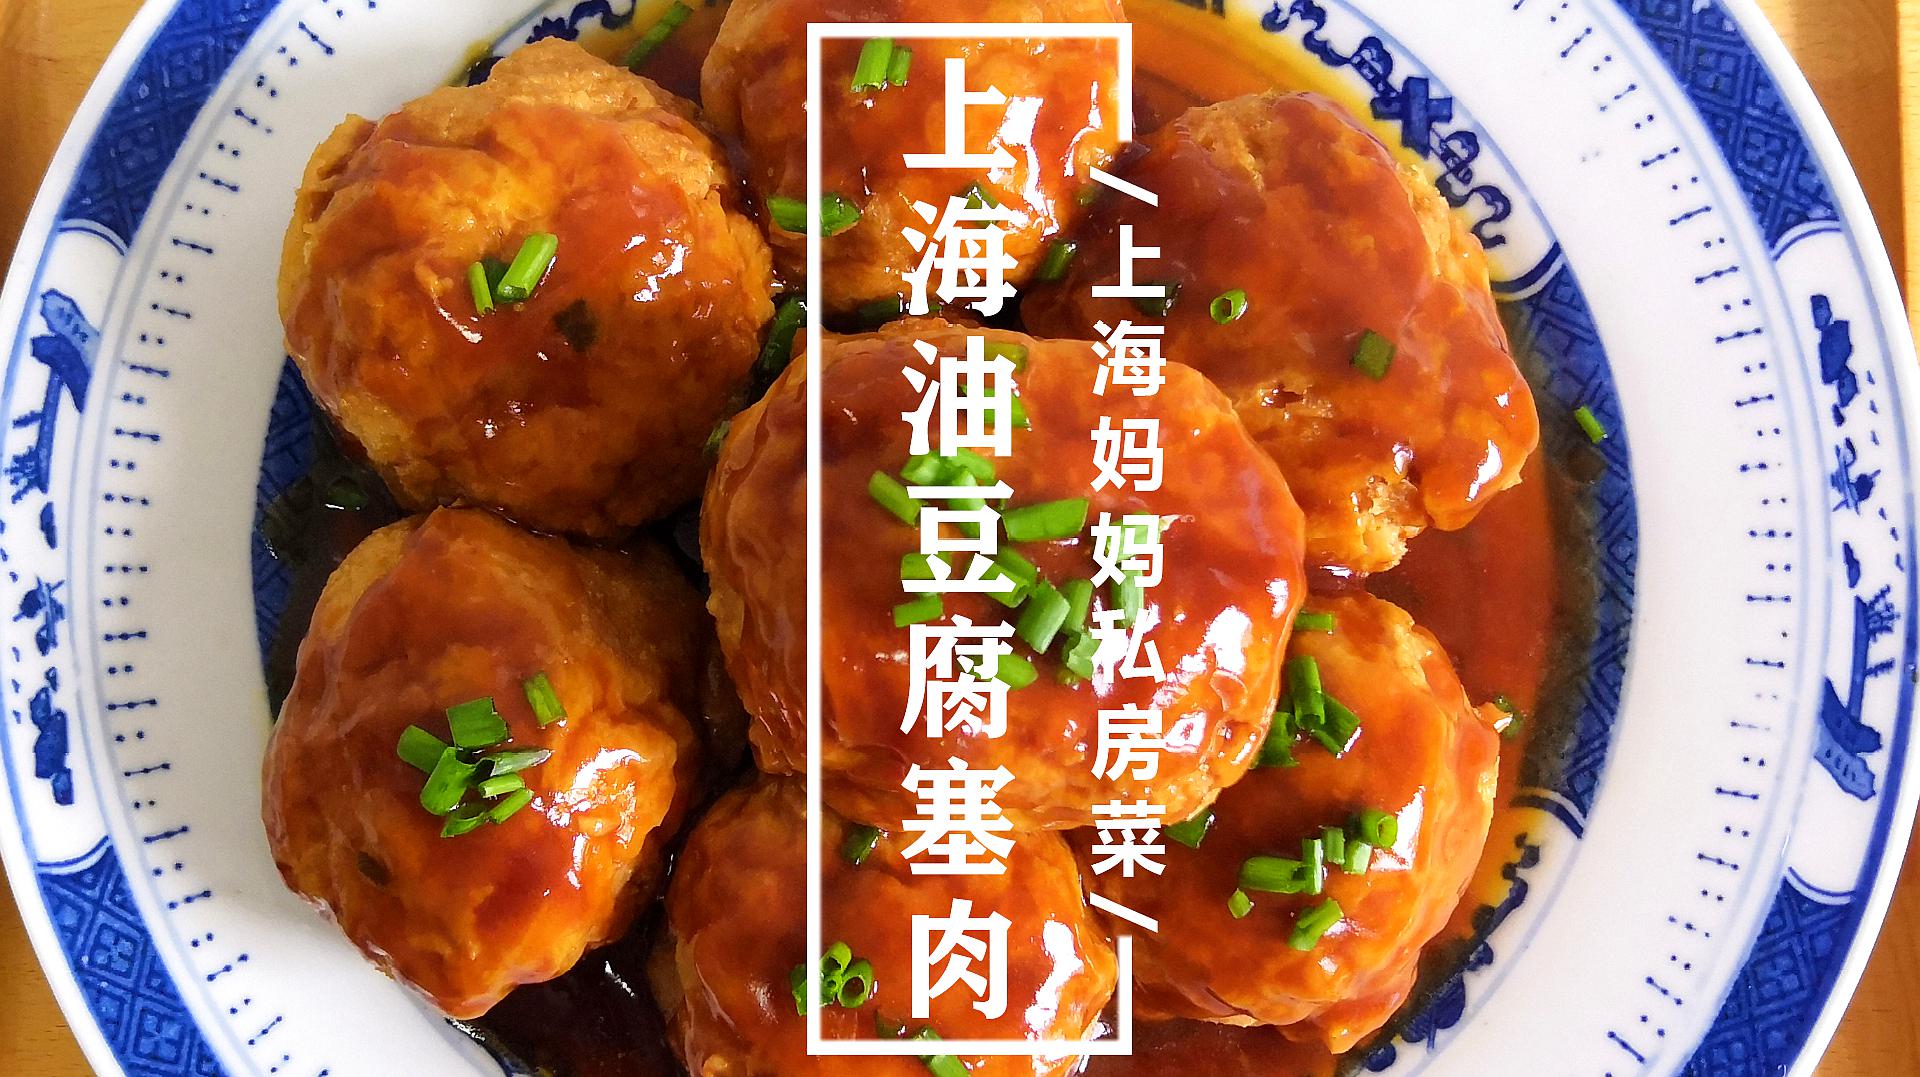 上海妈妈教你上海油豆腐塞肉家常做法,浓油赤酱,好吃又下饭